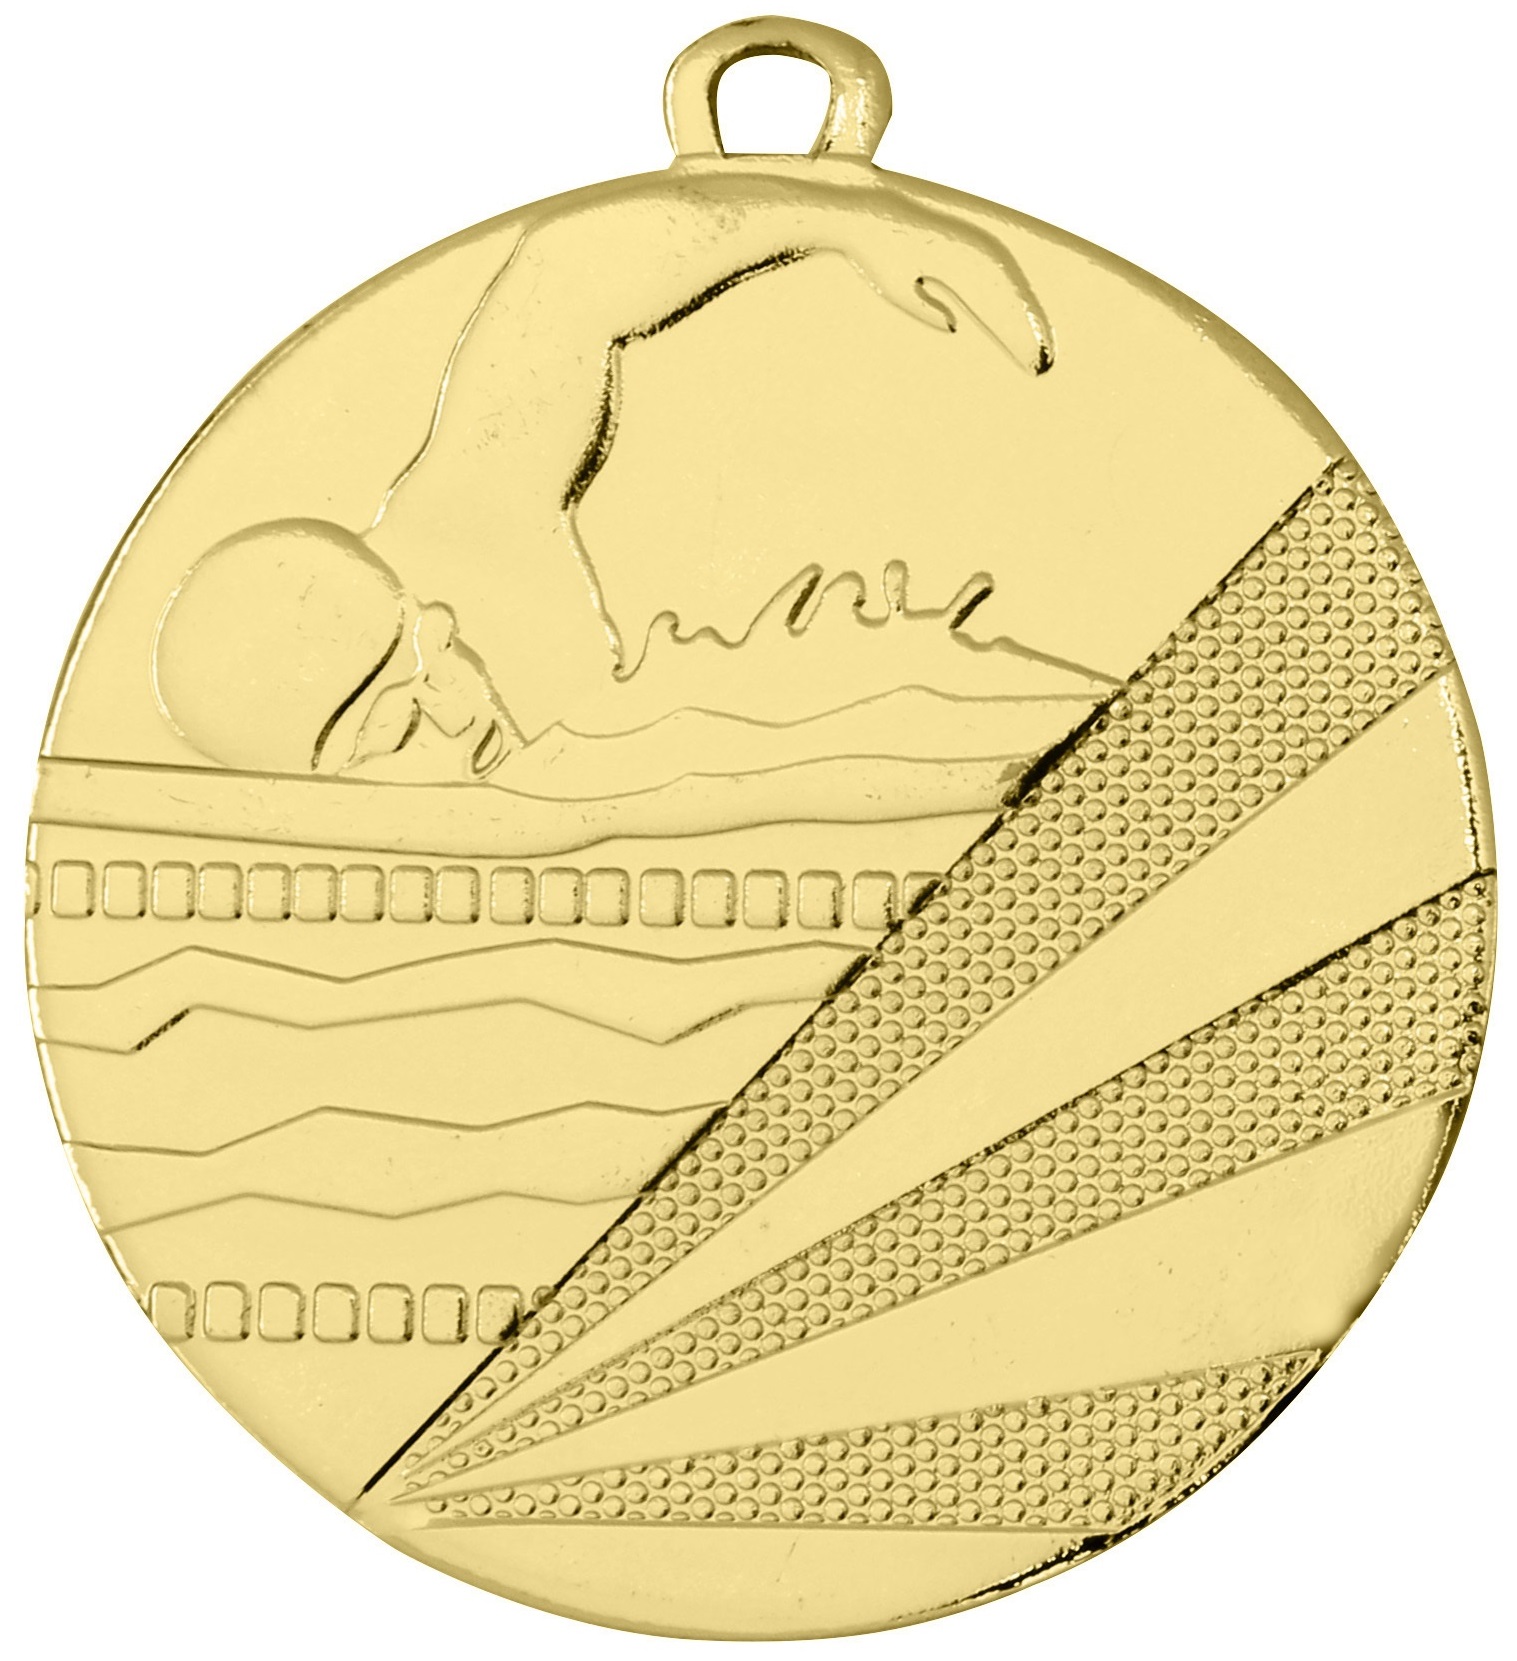 Schwimm-Medaille D112C inkl. Band u. Beschriftung Gold Fertig montiert gegen Aufpreis